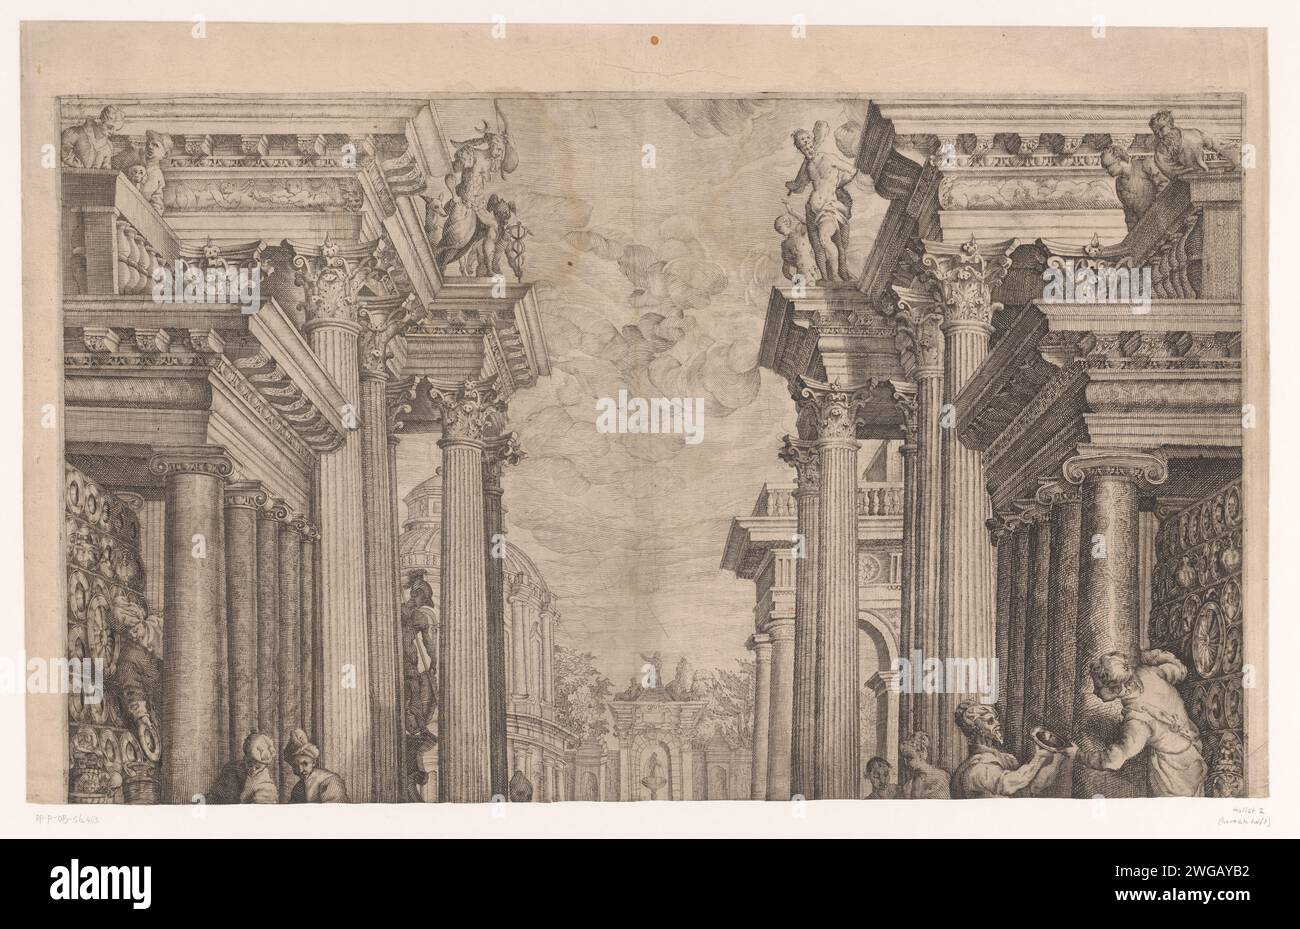 Hochzeit in Kana, M. Preyss, nach Andrea Michieli, 1594 Druck korinthische Säulen und Gesimse von Galerien (oberes Blatt). Christus bestellt (sechs) Gläser, die mit Wasser gefüllt werden  Hochzeitsfest in Kana Stockfoto